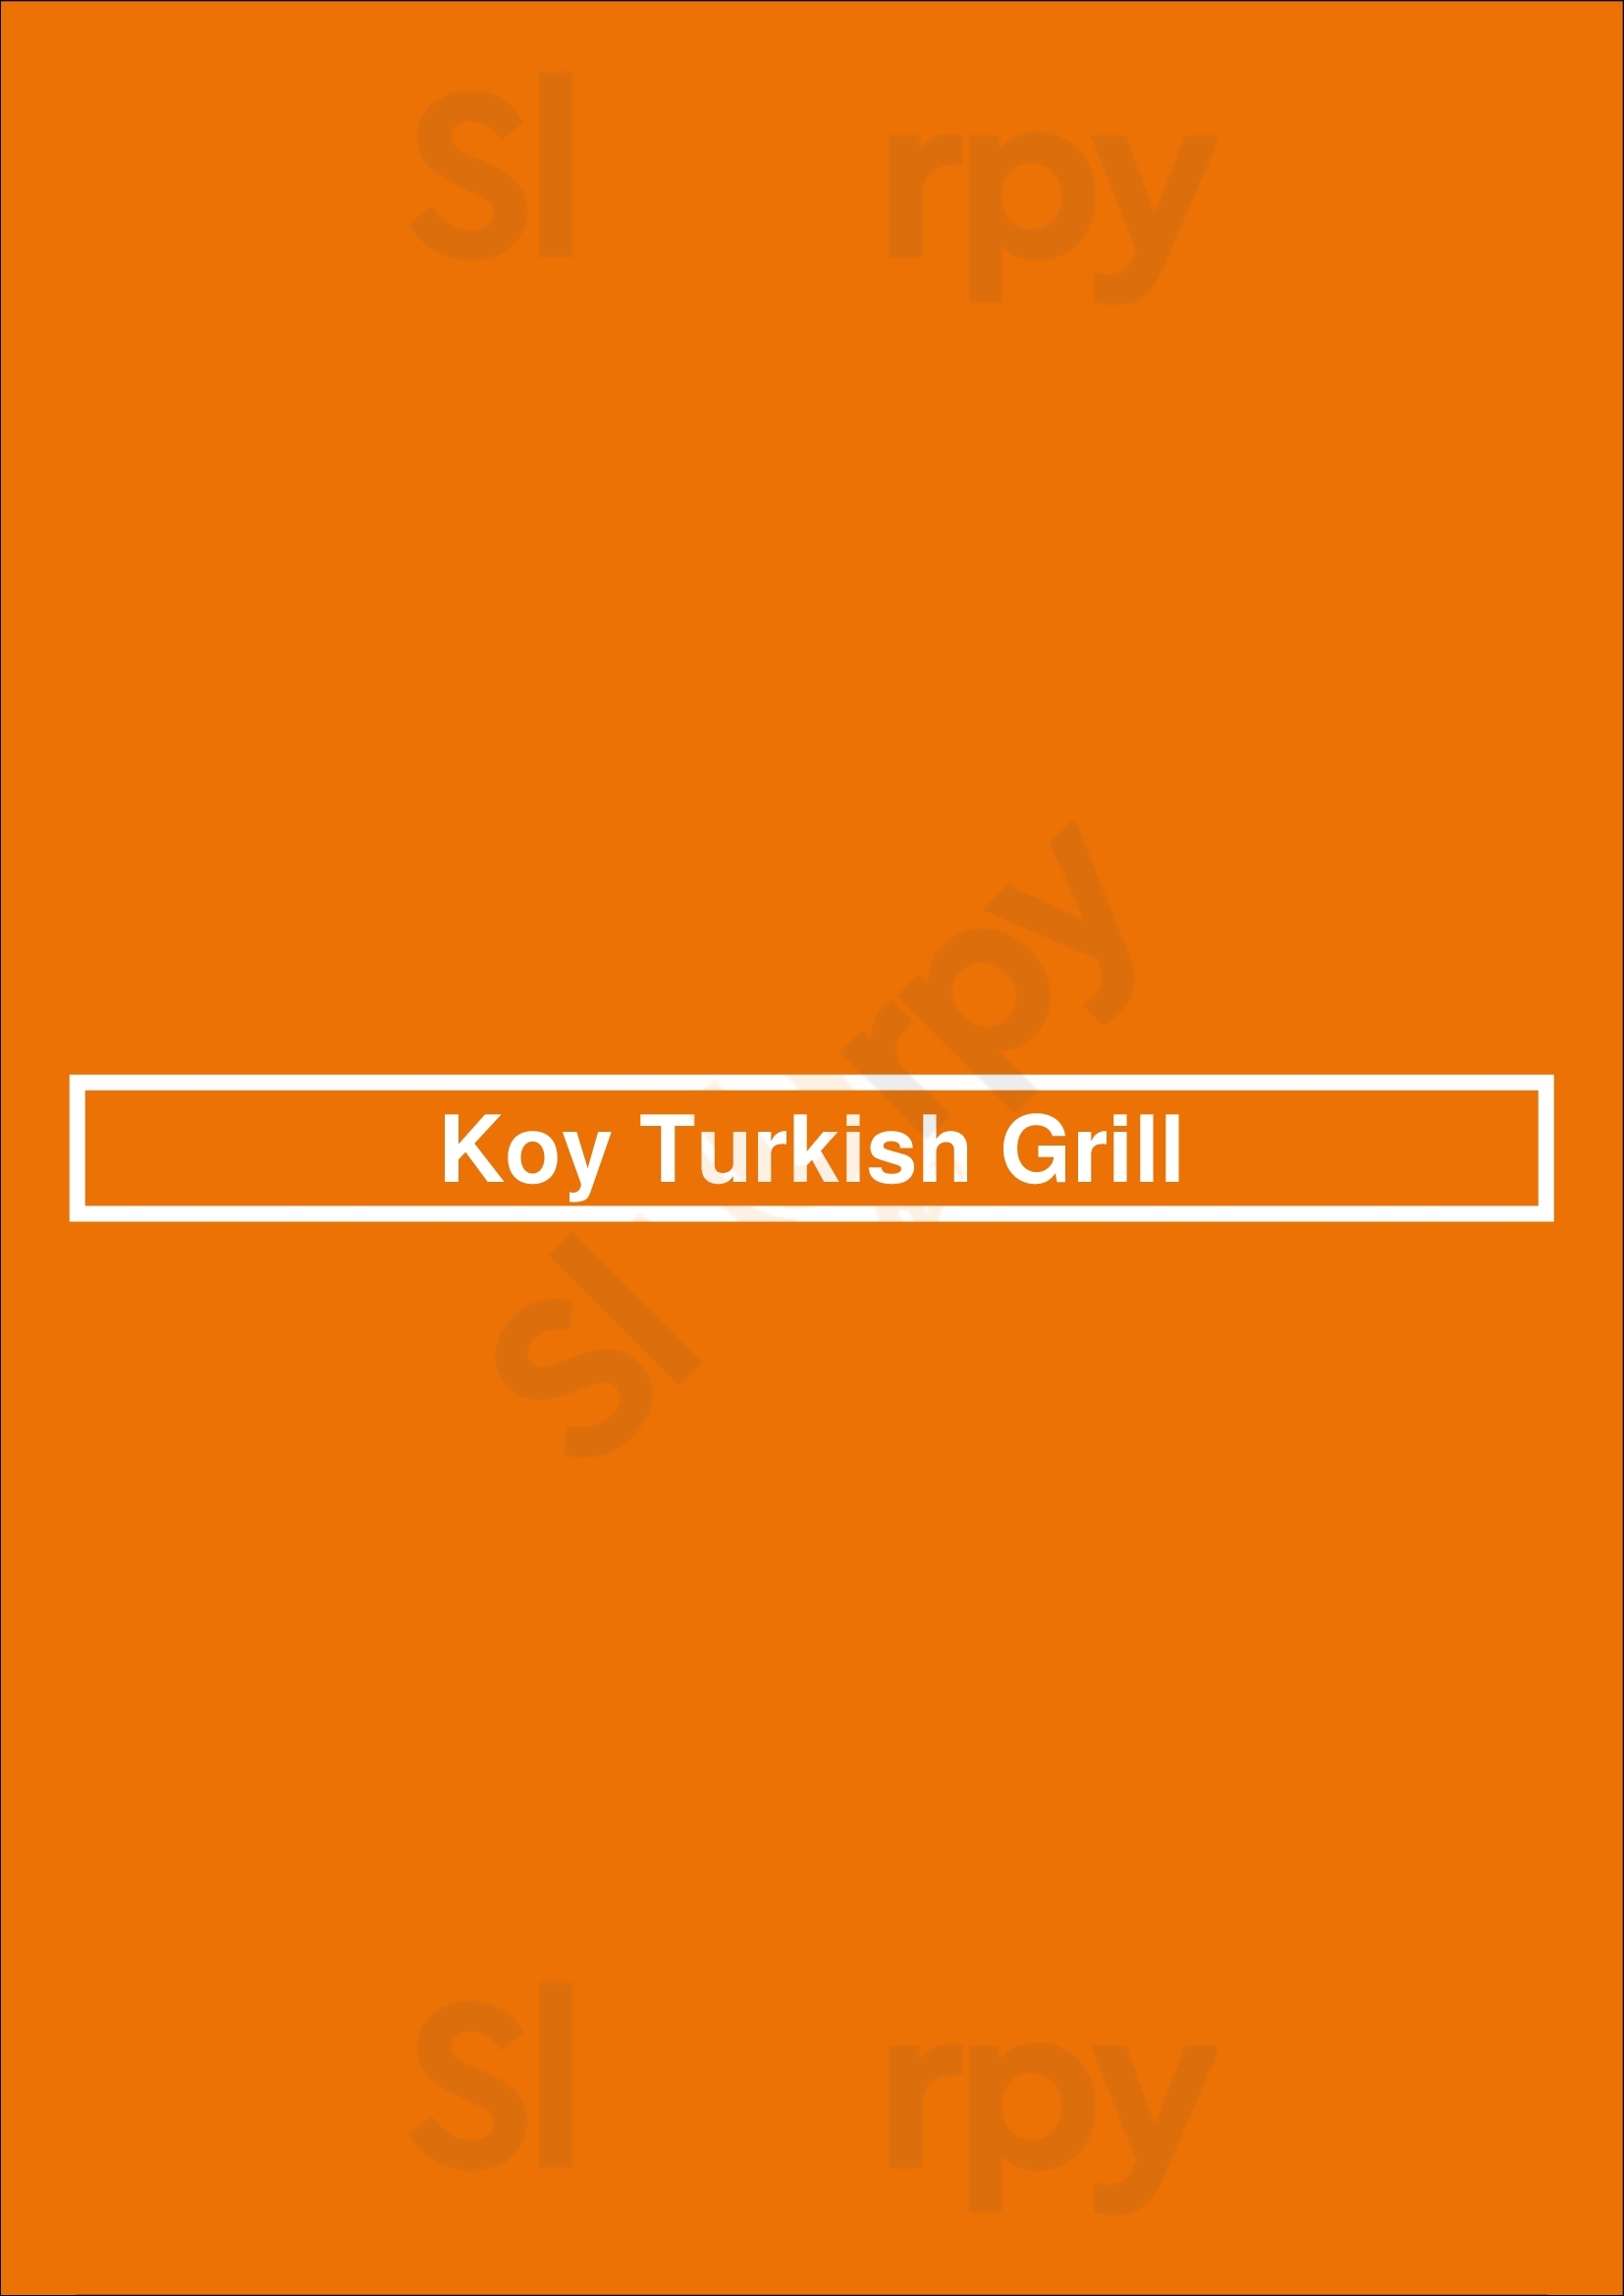 Koy Turkish Grill East Brunswick Menu - 1